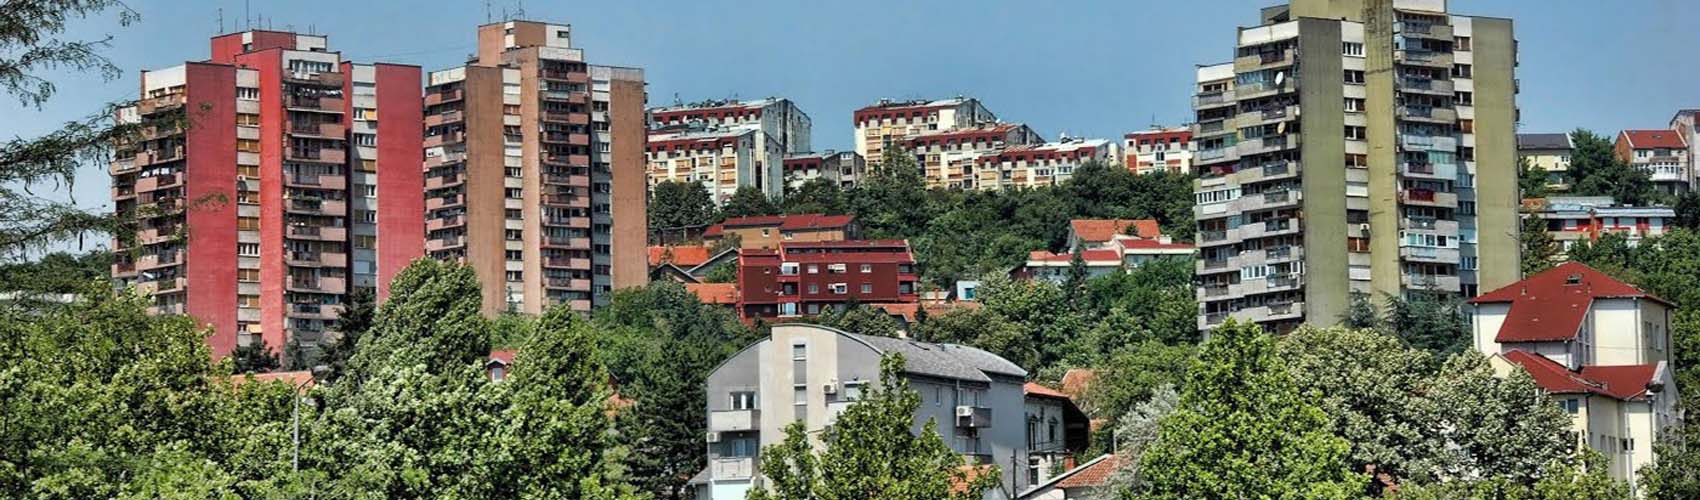 Kasko osiguranje Rakovica | Beograd